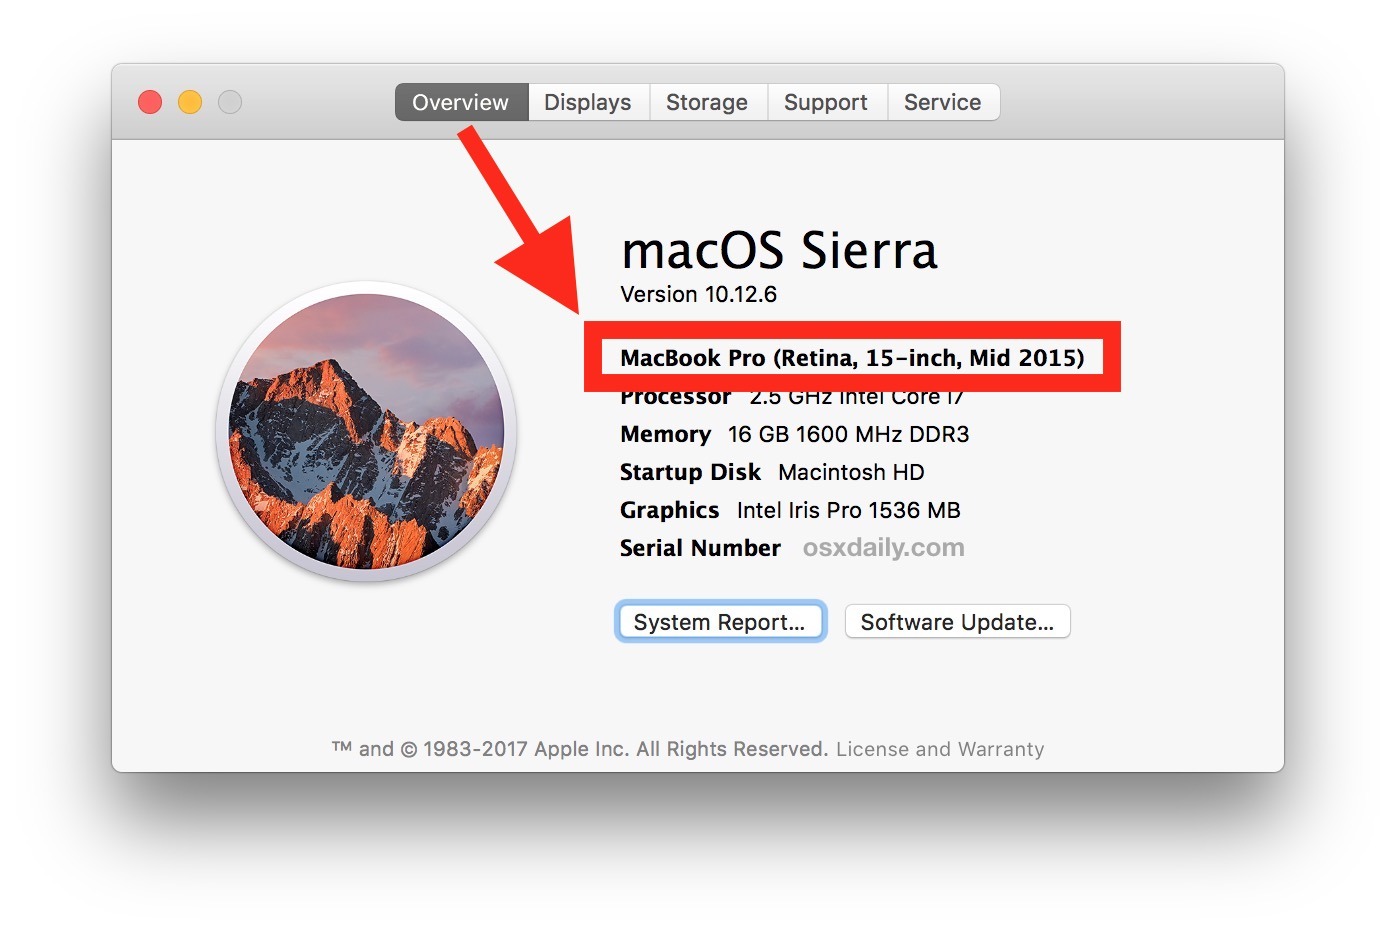 Как найти модель Mac и модельный год для проверки совместимости с macOS Mojave